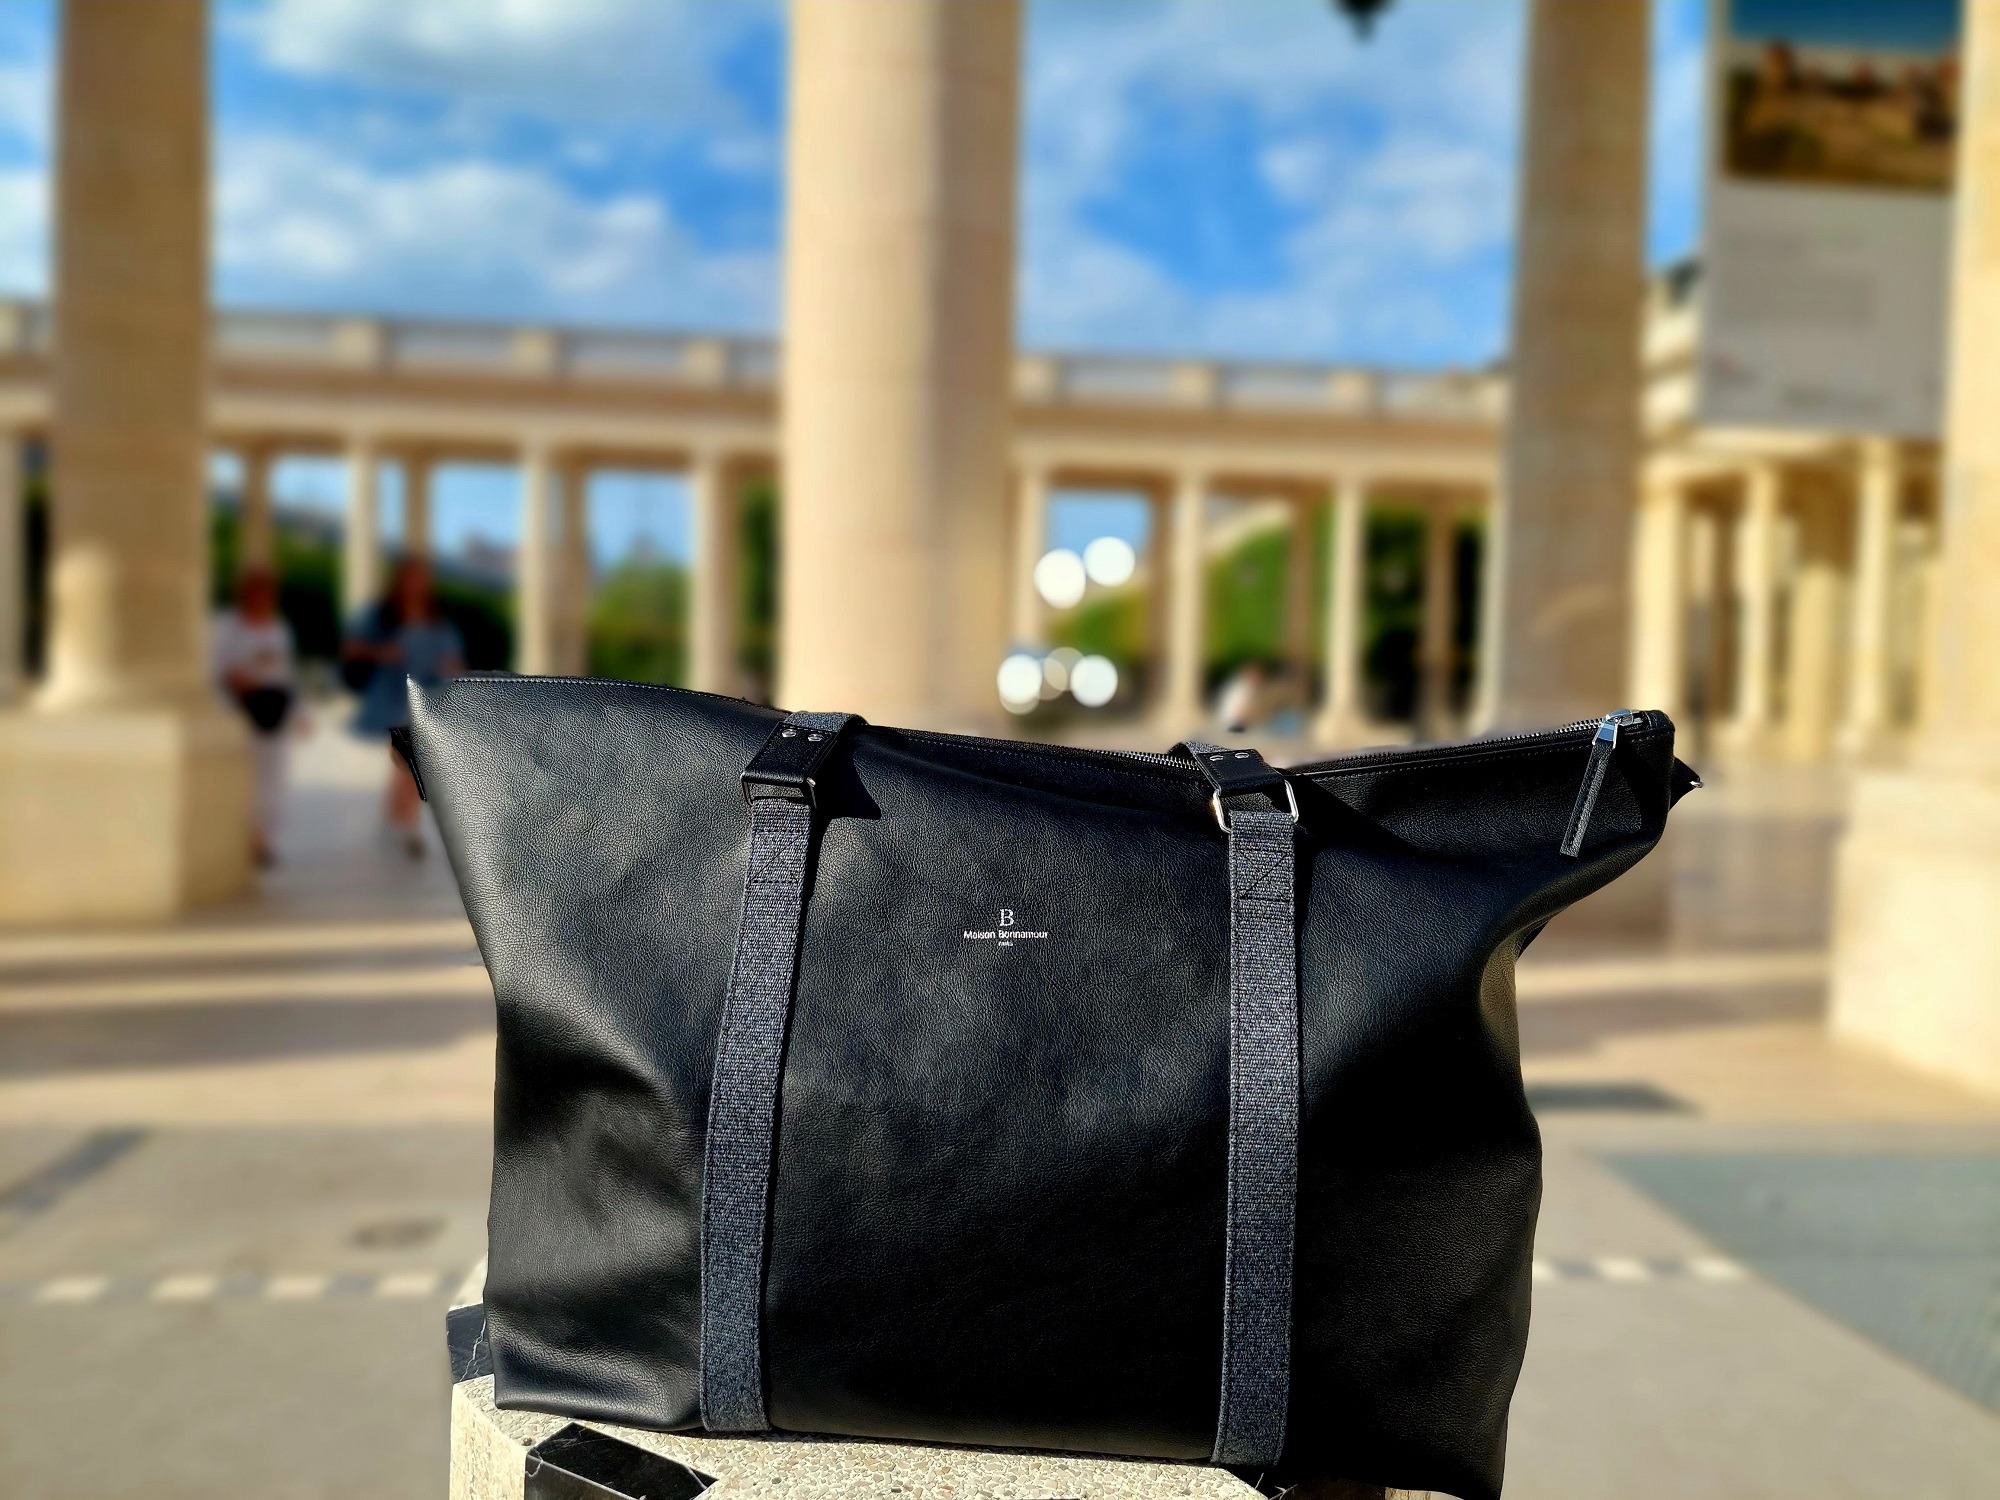 Le sac de Voyage "Le Saint-Germain-des-Prés"